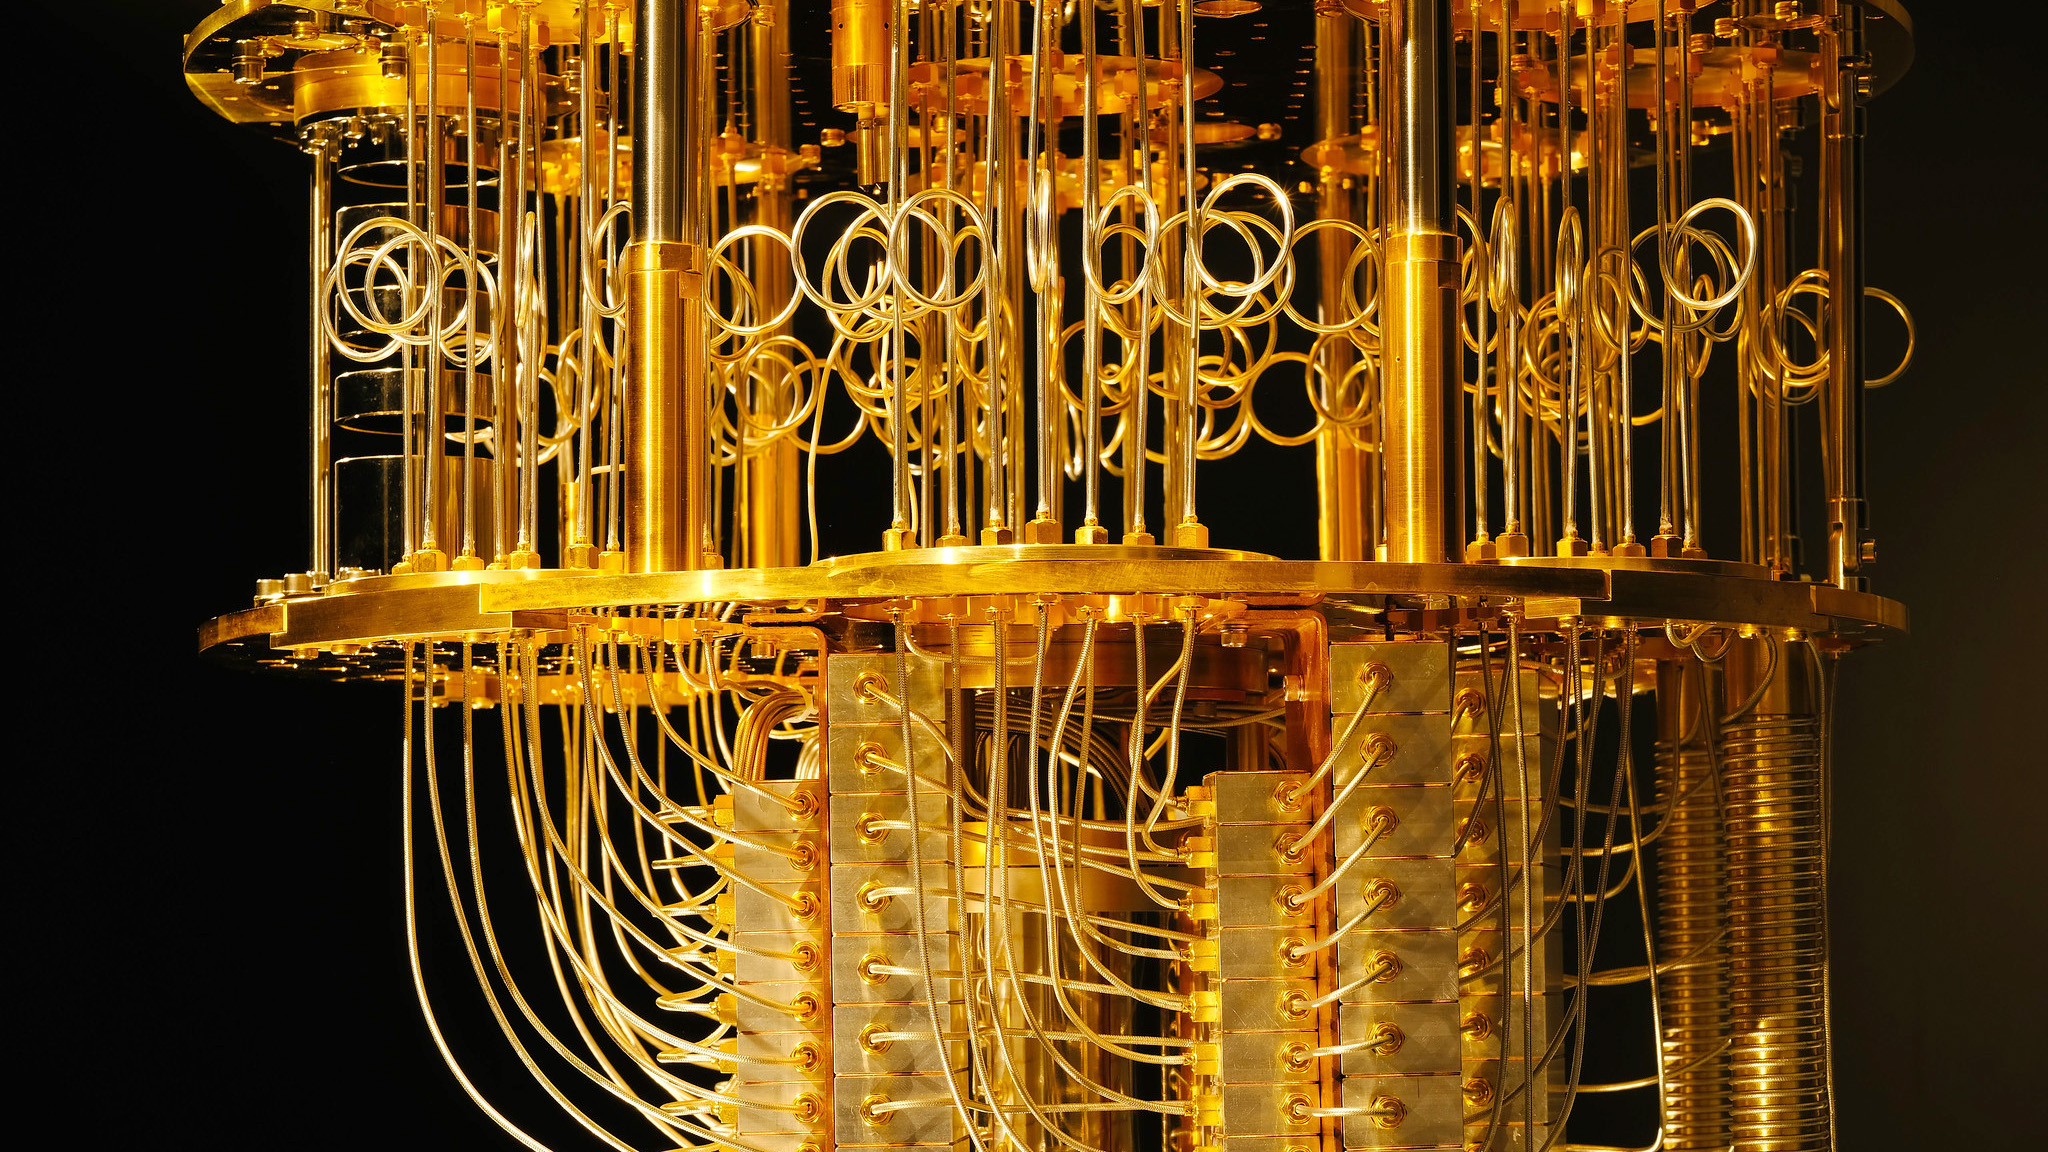 制冷盘管使量子计算机的温度保持在零度以下。